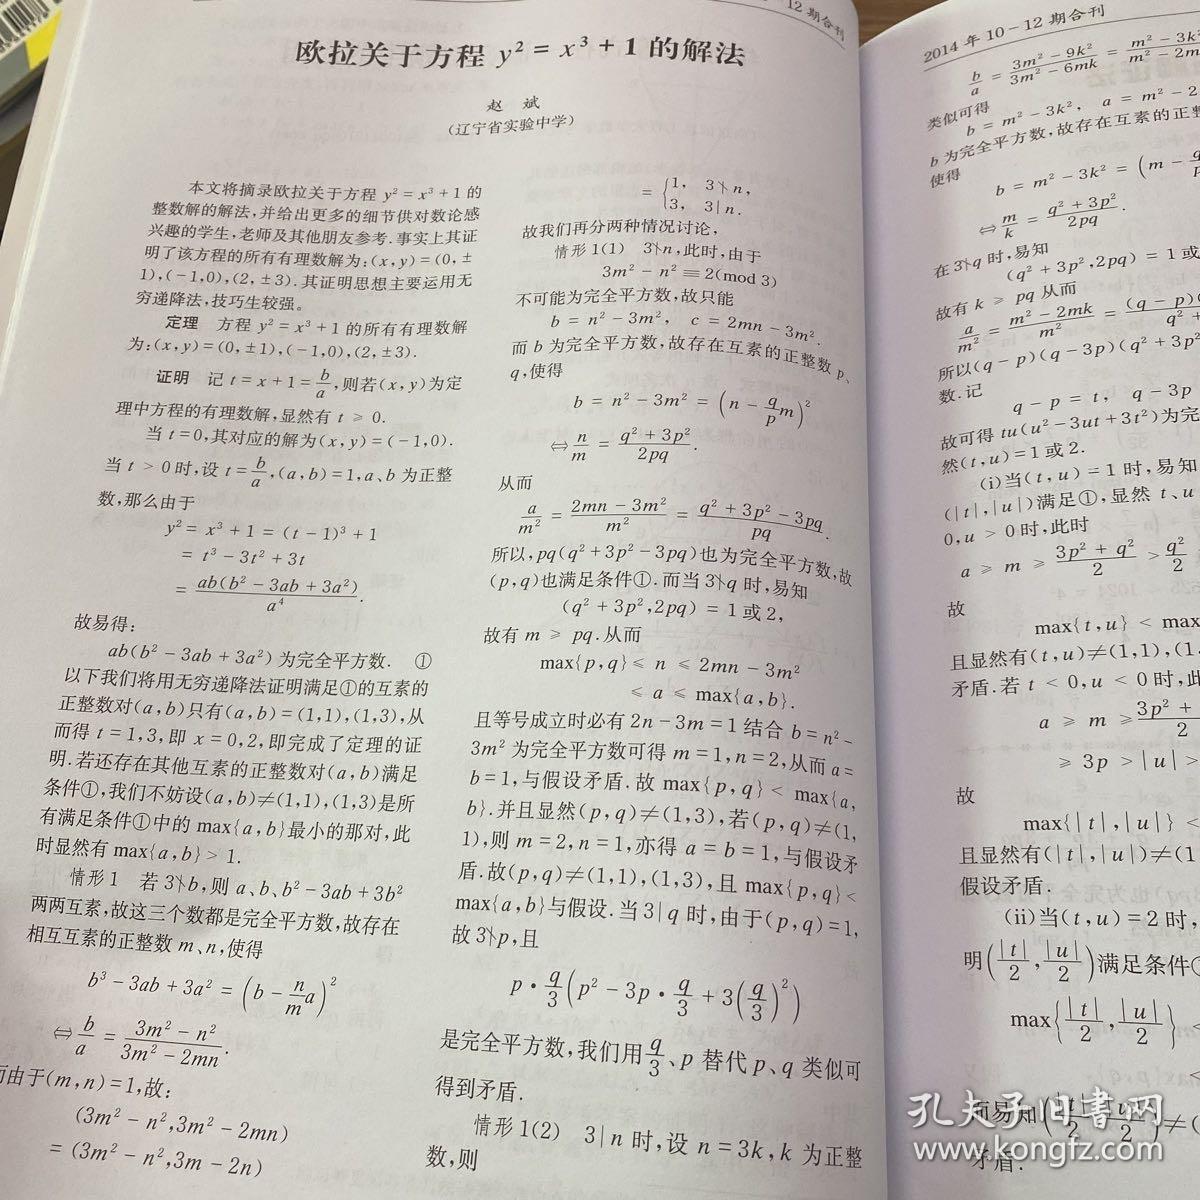 学数学2013年4-6期合刊
科普 综合学习专辑
16开140多页